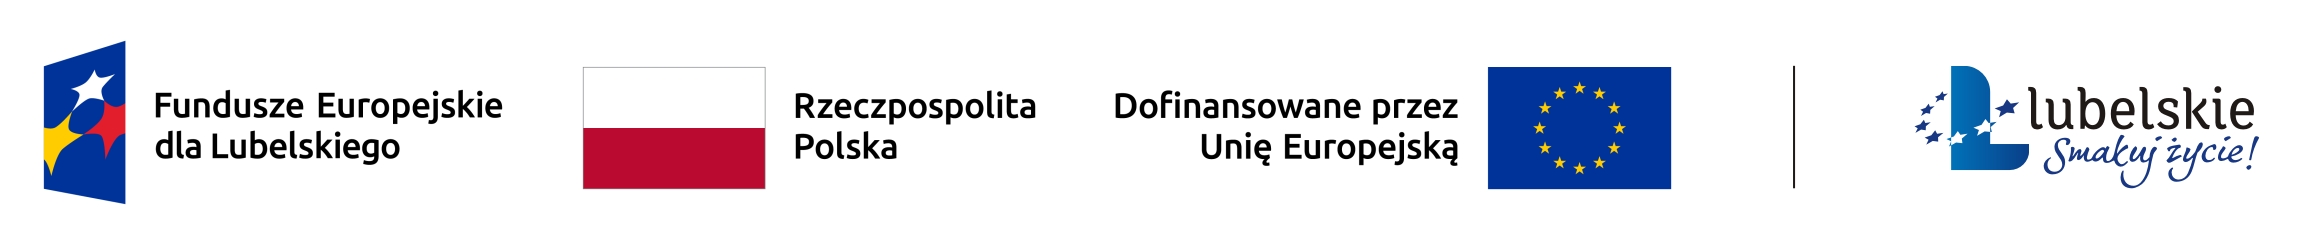 Zestawienie znaków: Fundusze Europejskie dla Lubelskiego, Barwy Rzeczypospolitej Polskiej, informacja o Dofinansowaniu przez Unię Europejską wraz z flagą Unii Europejskiej, pionowa czarna linia oddzielająca, logo województwa lubelskiego